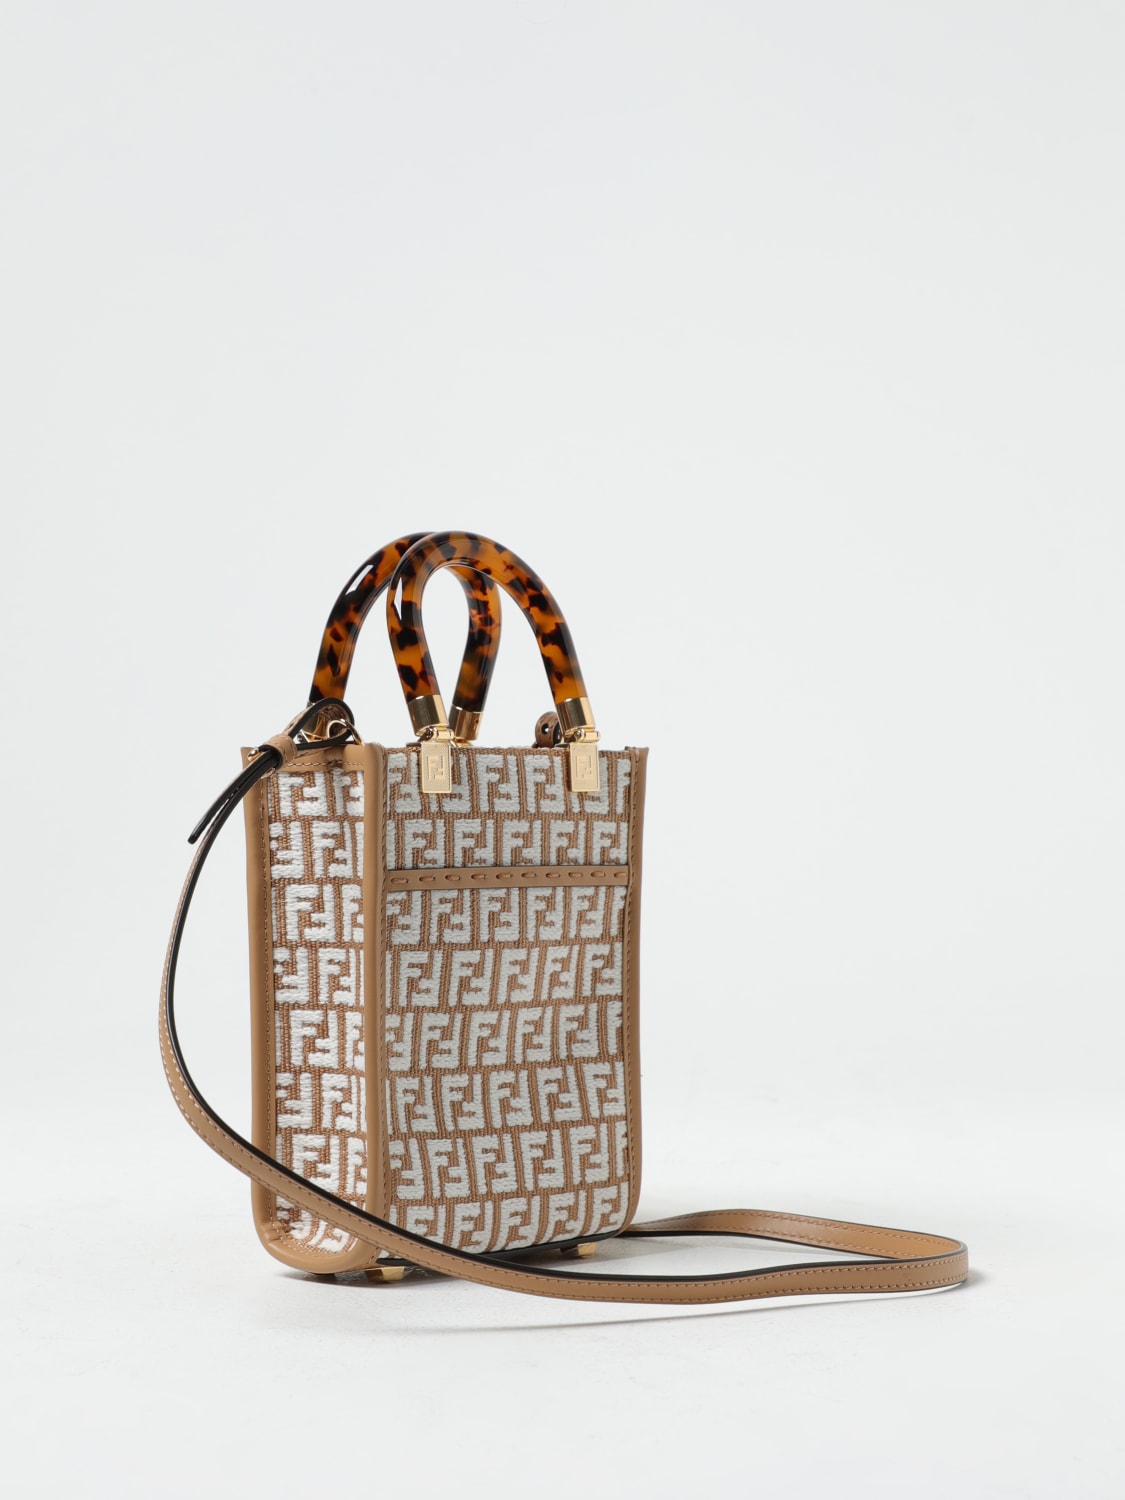 Fendi Mini Sunshine Raffia Shopper Bag